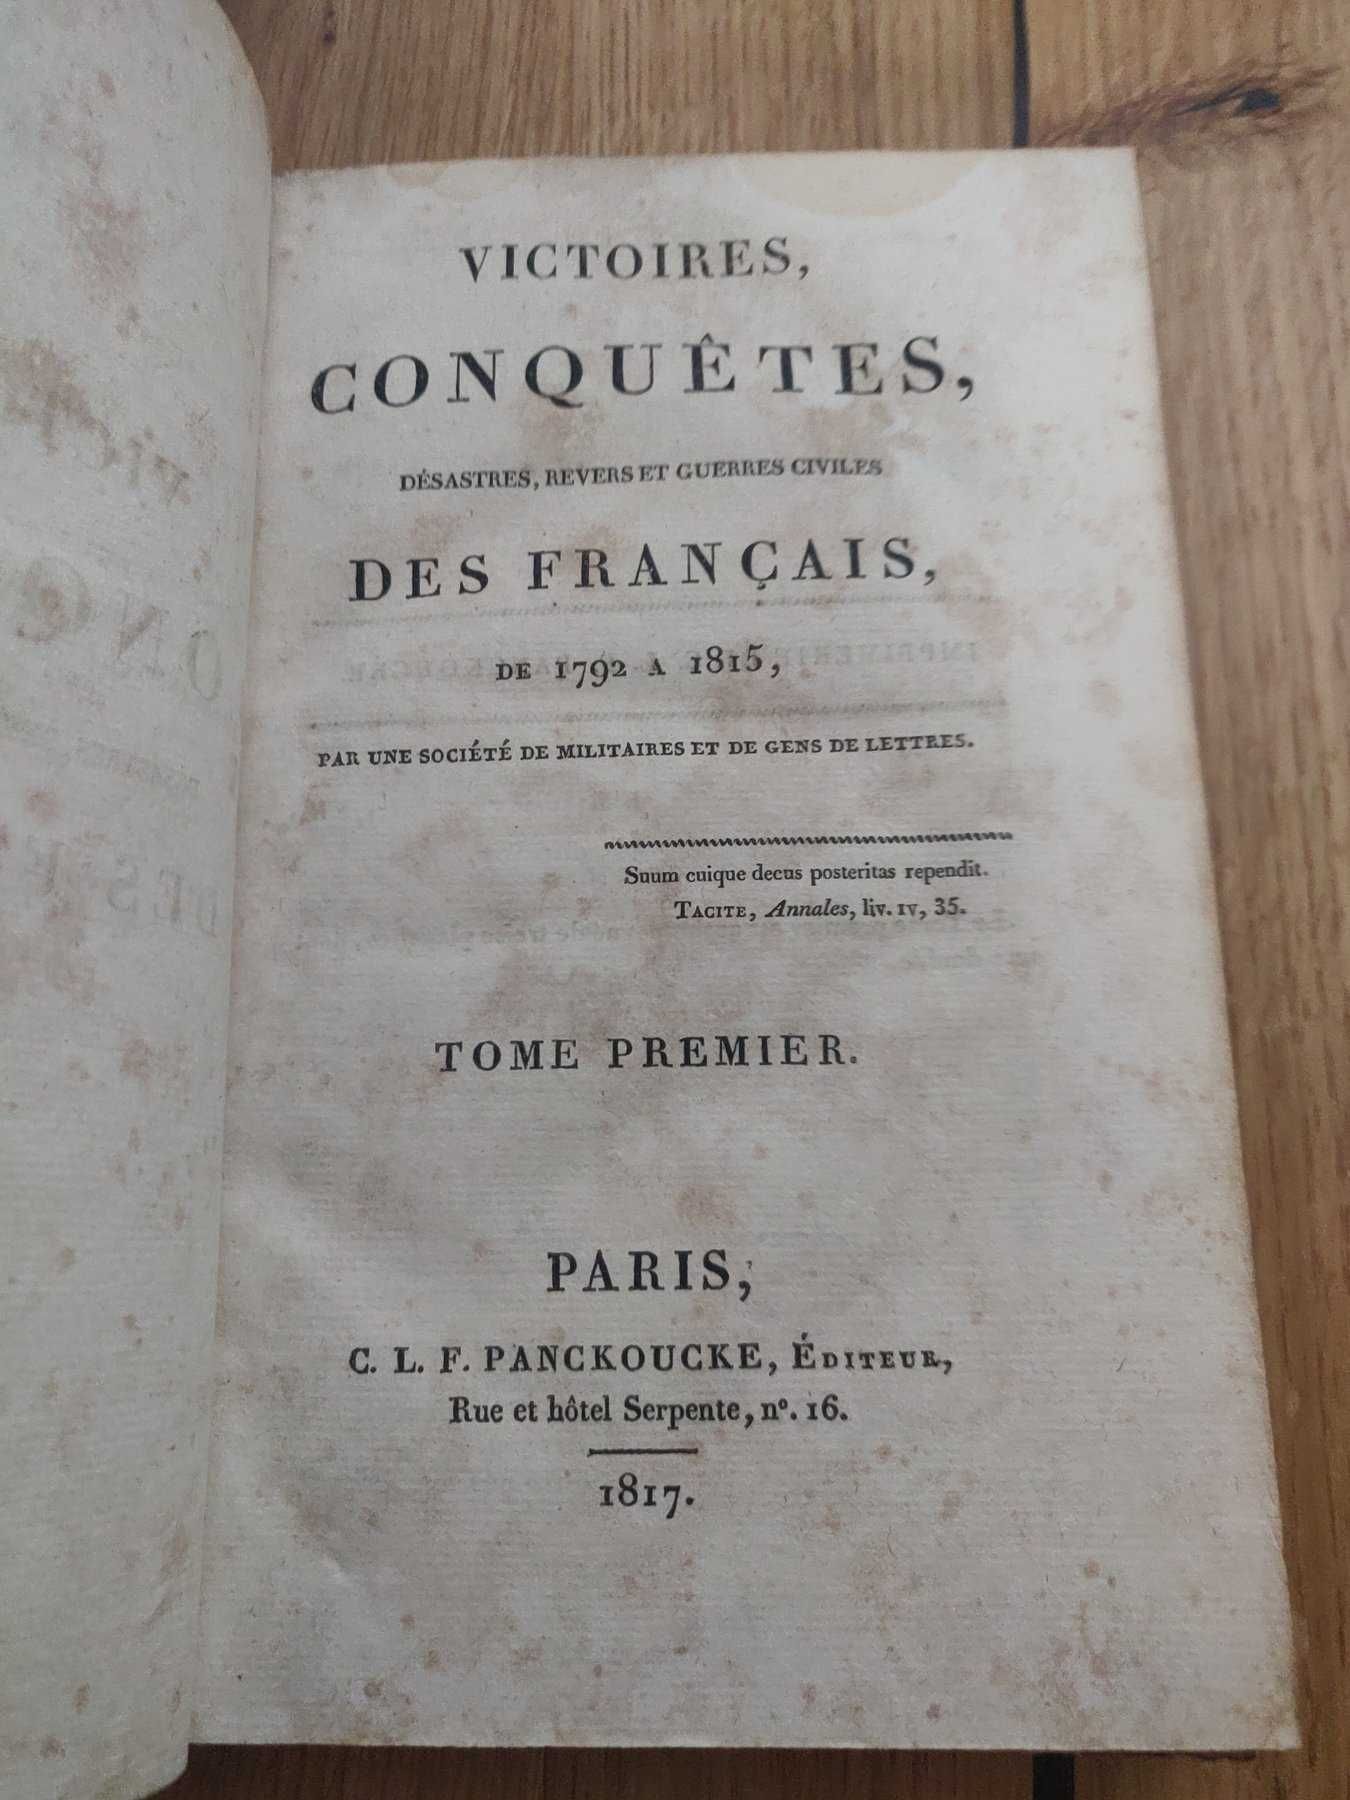 25 vols. sobre as conquistas de Napoleão até 1815. Anos 1817 a 1821.